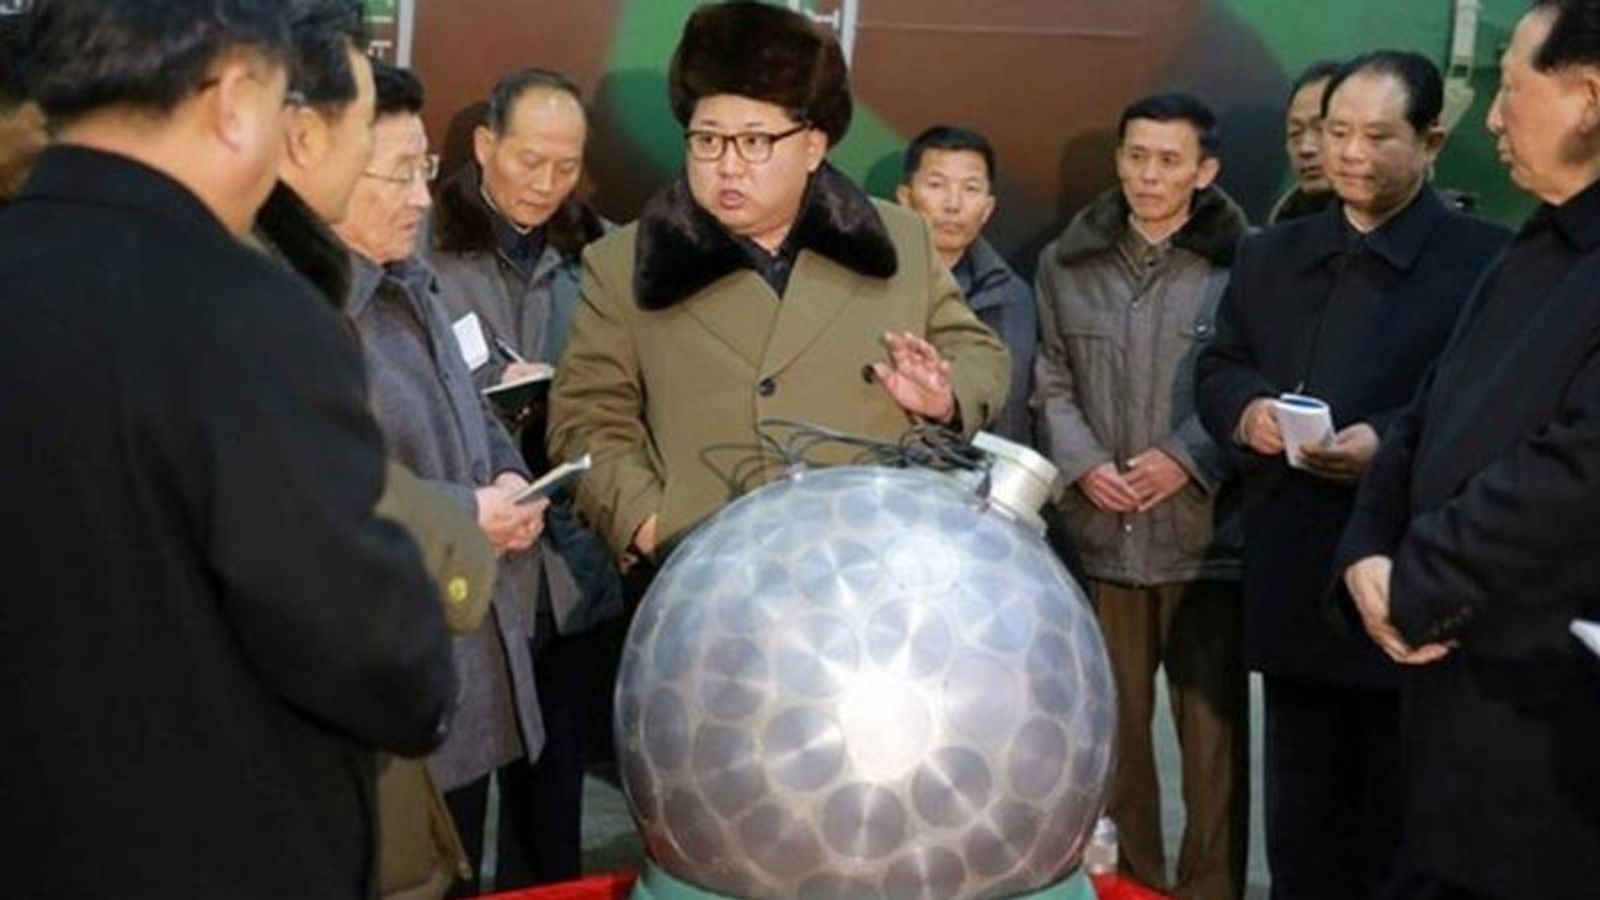 Снимки Ким Чен Ына с миниатюрной атомной бомбой, которая выглядела очень похожей на дискотечный шар, породили множество интернет-мемов